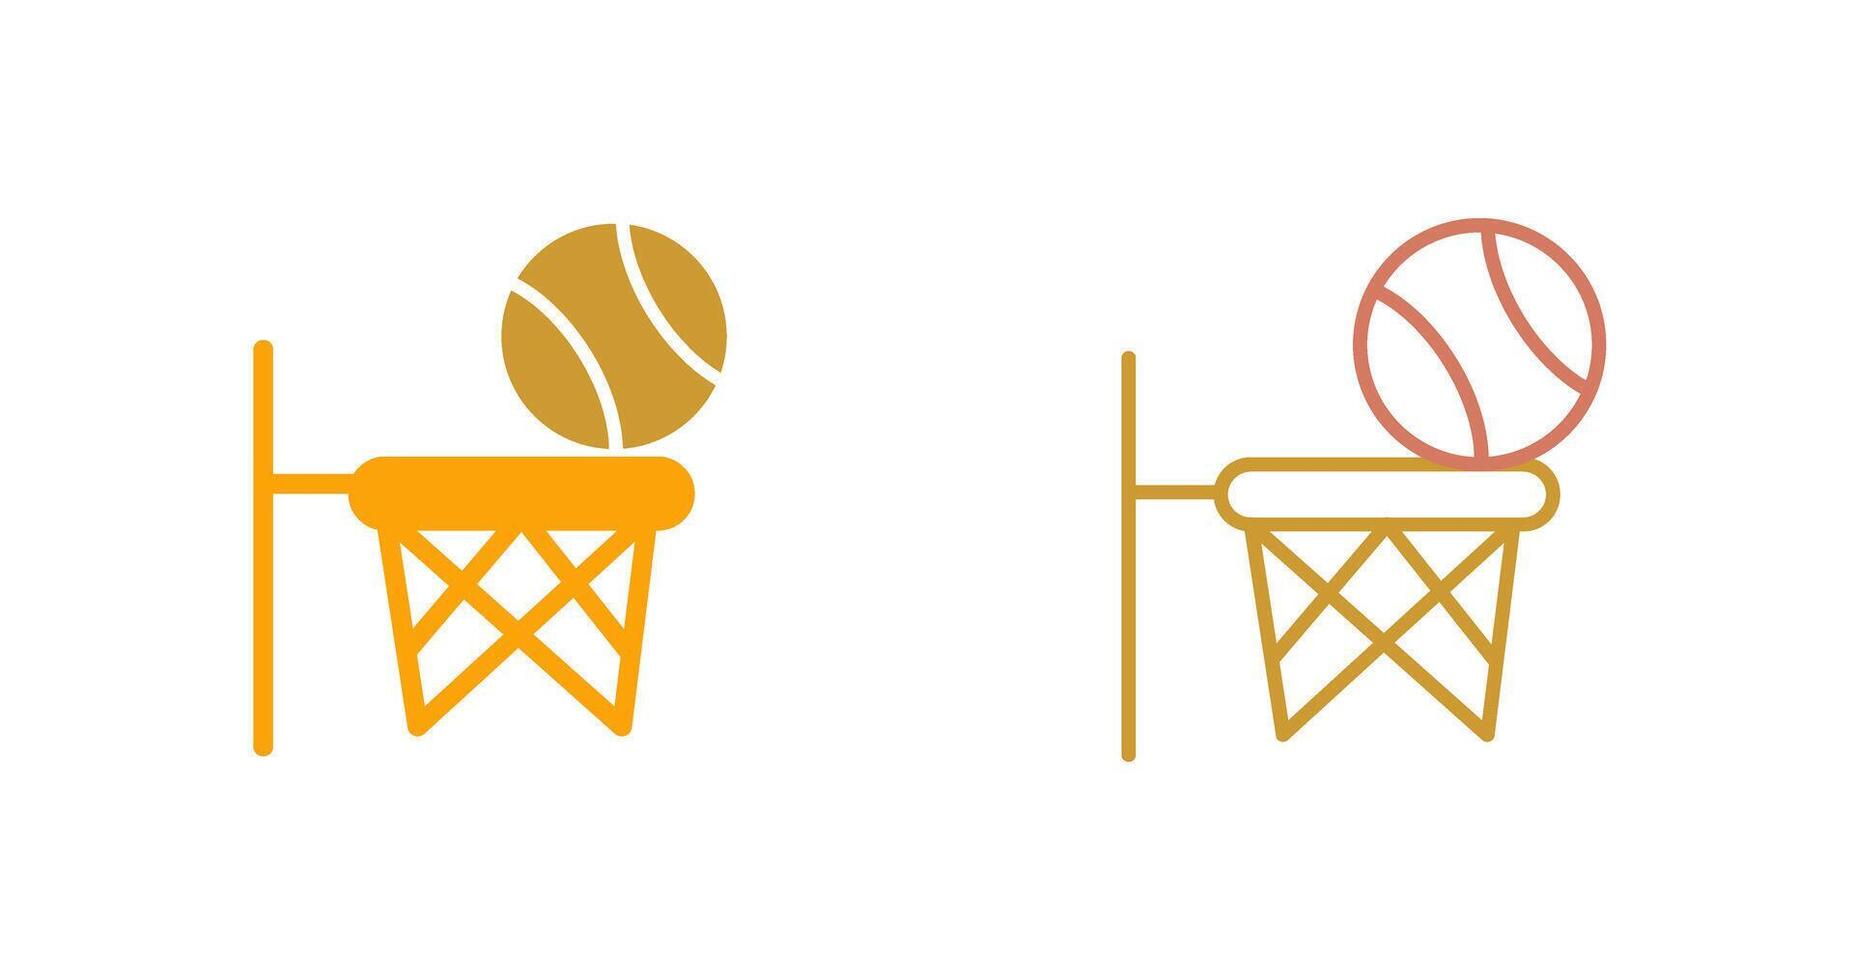 design de ícone de basquete vetor